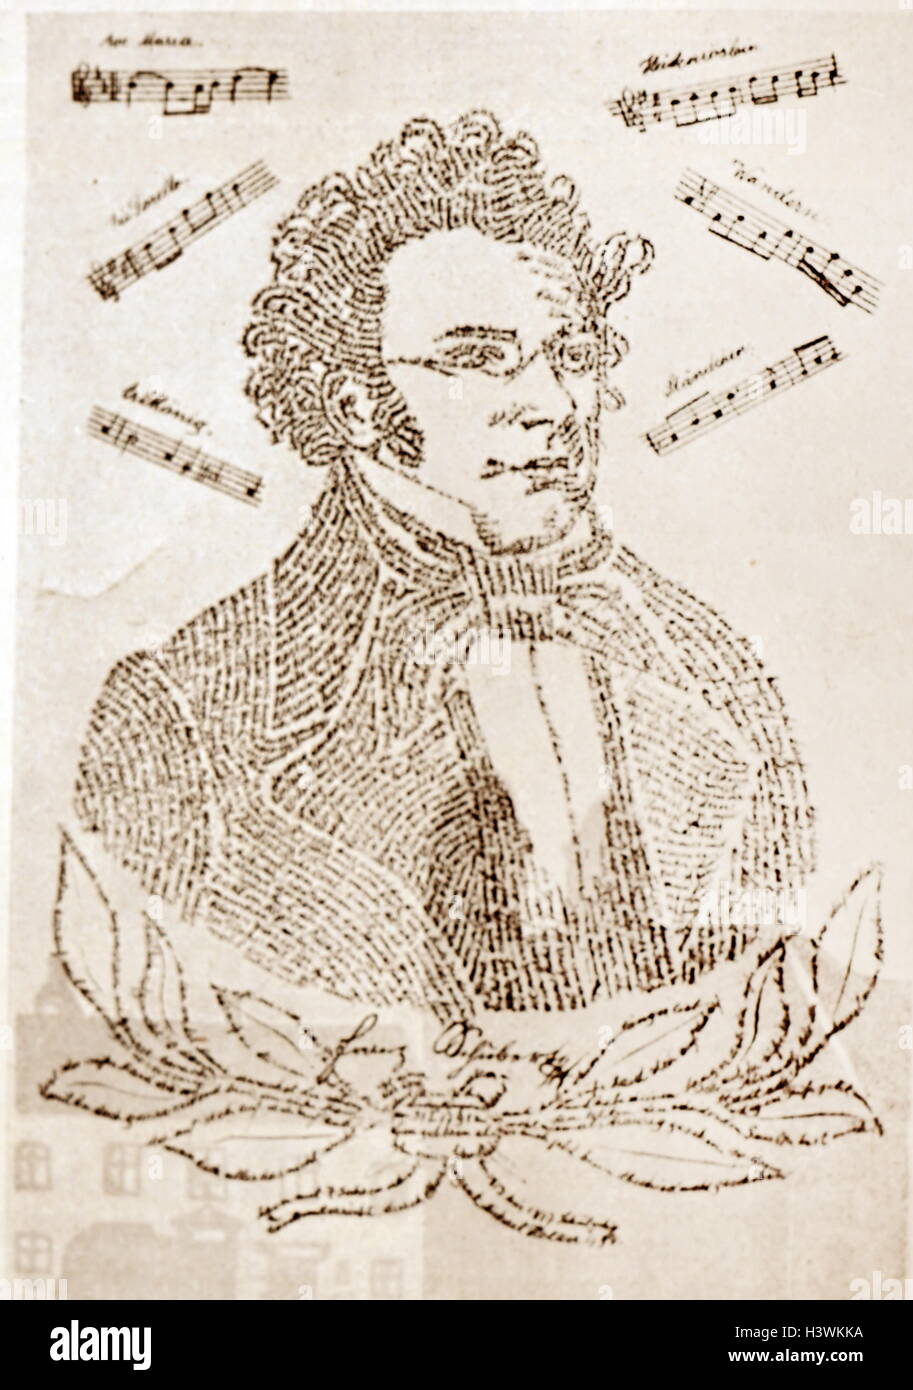 Ritratto calligrafico di Franz Schubert (1797-1828) un compositore austriaco, consistente della biografia e bibliografia. Datata del XIX secolo Foto Stock